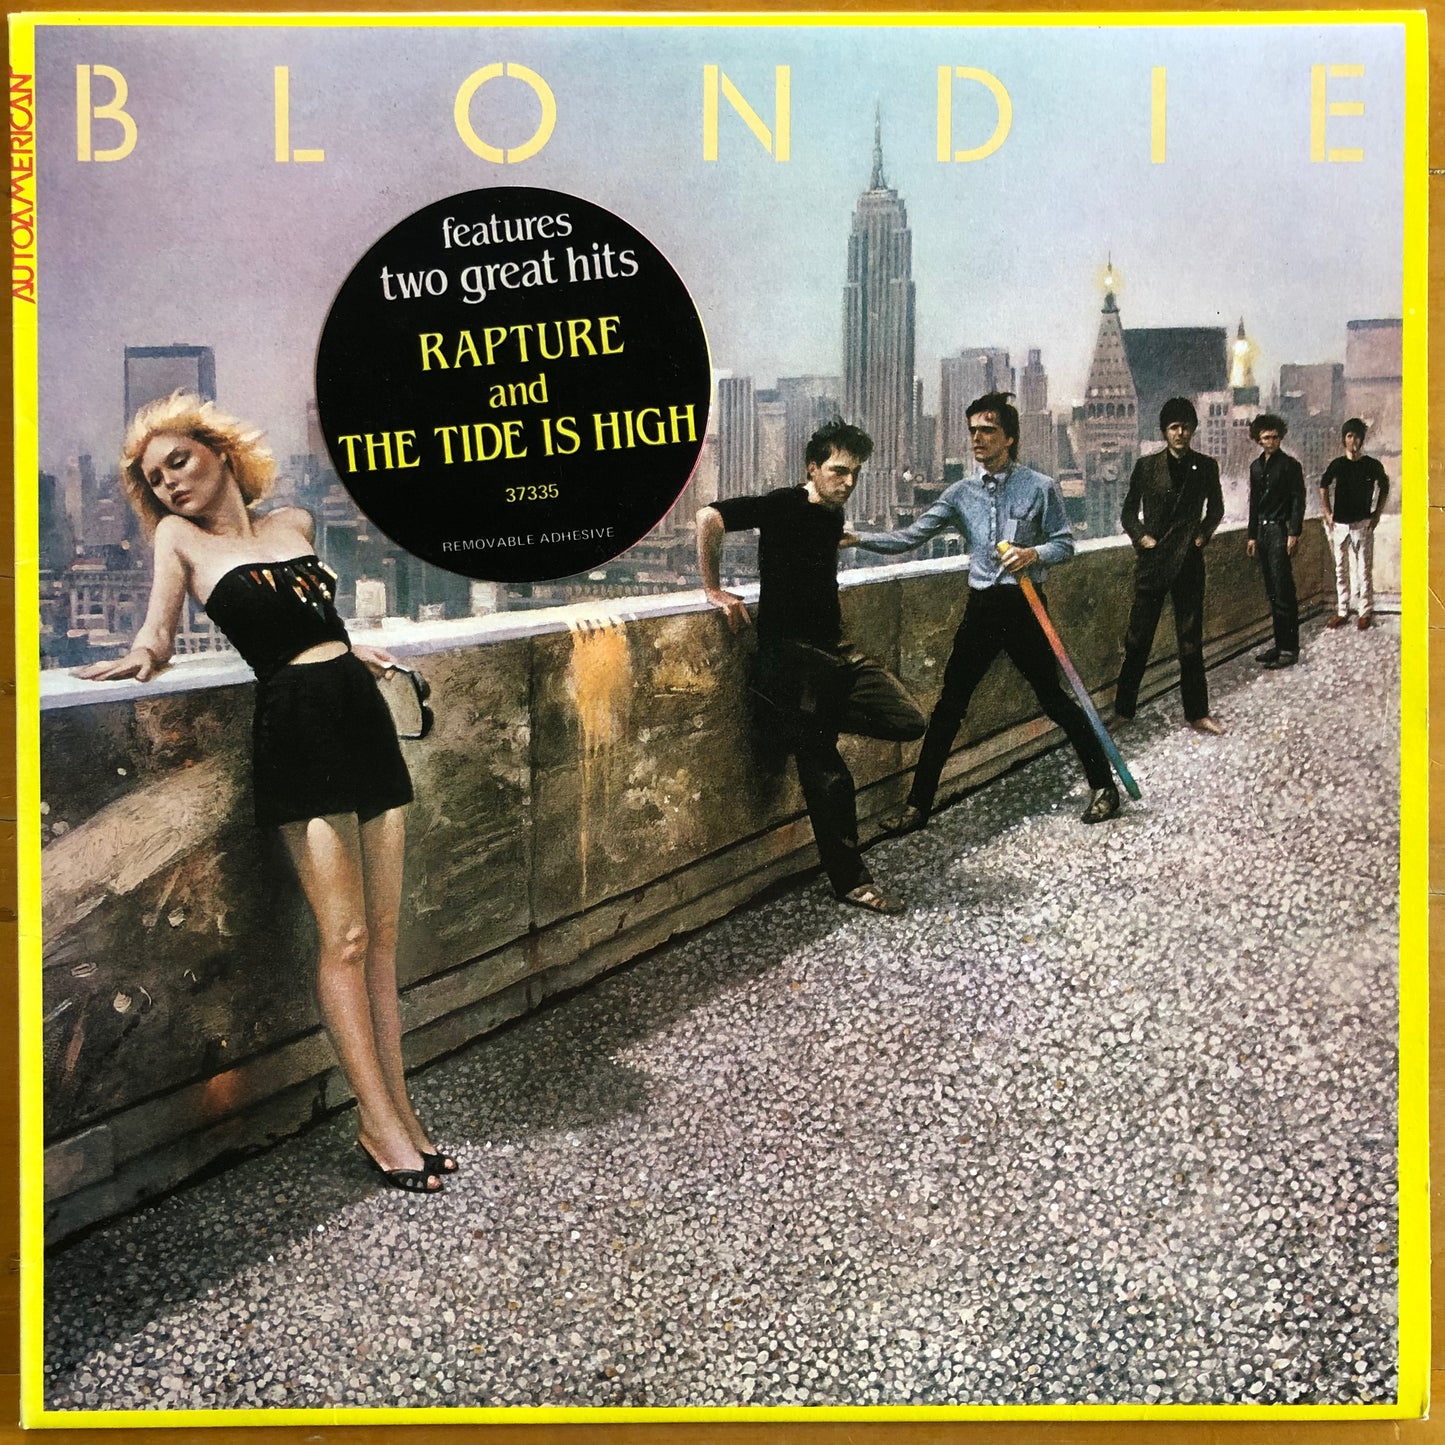 Blondie - Autoamerican